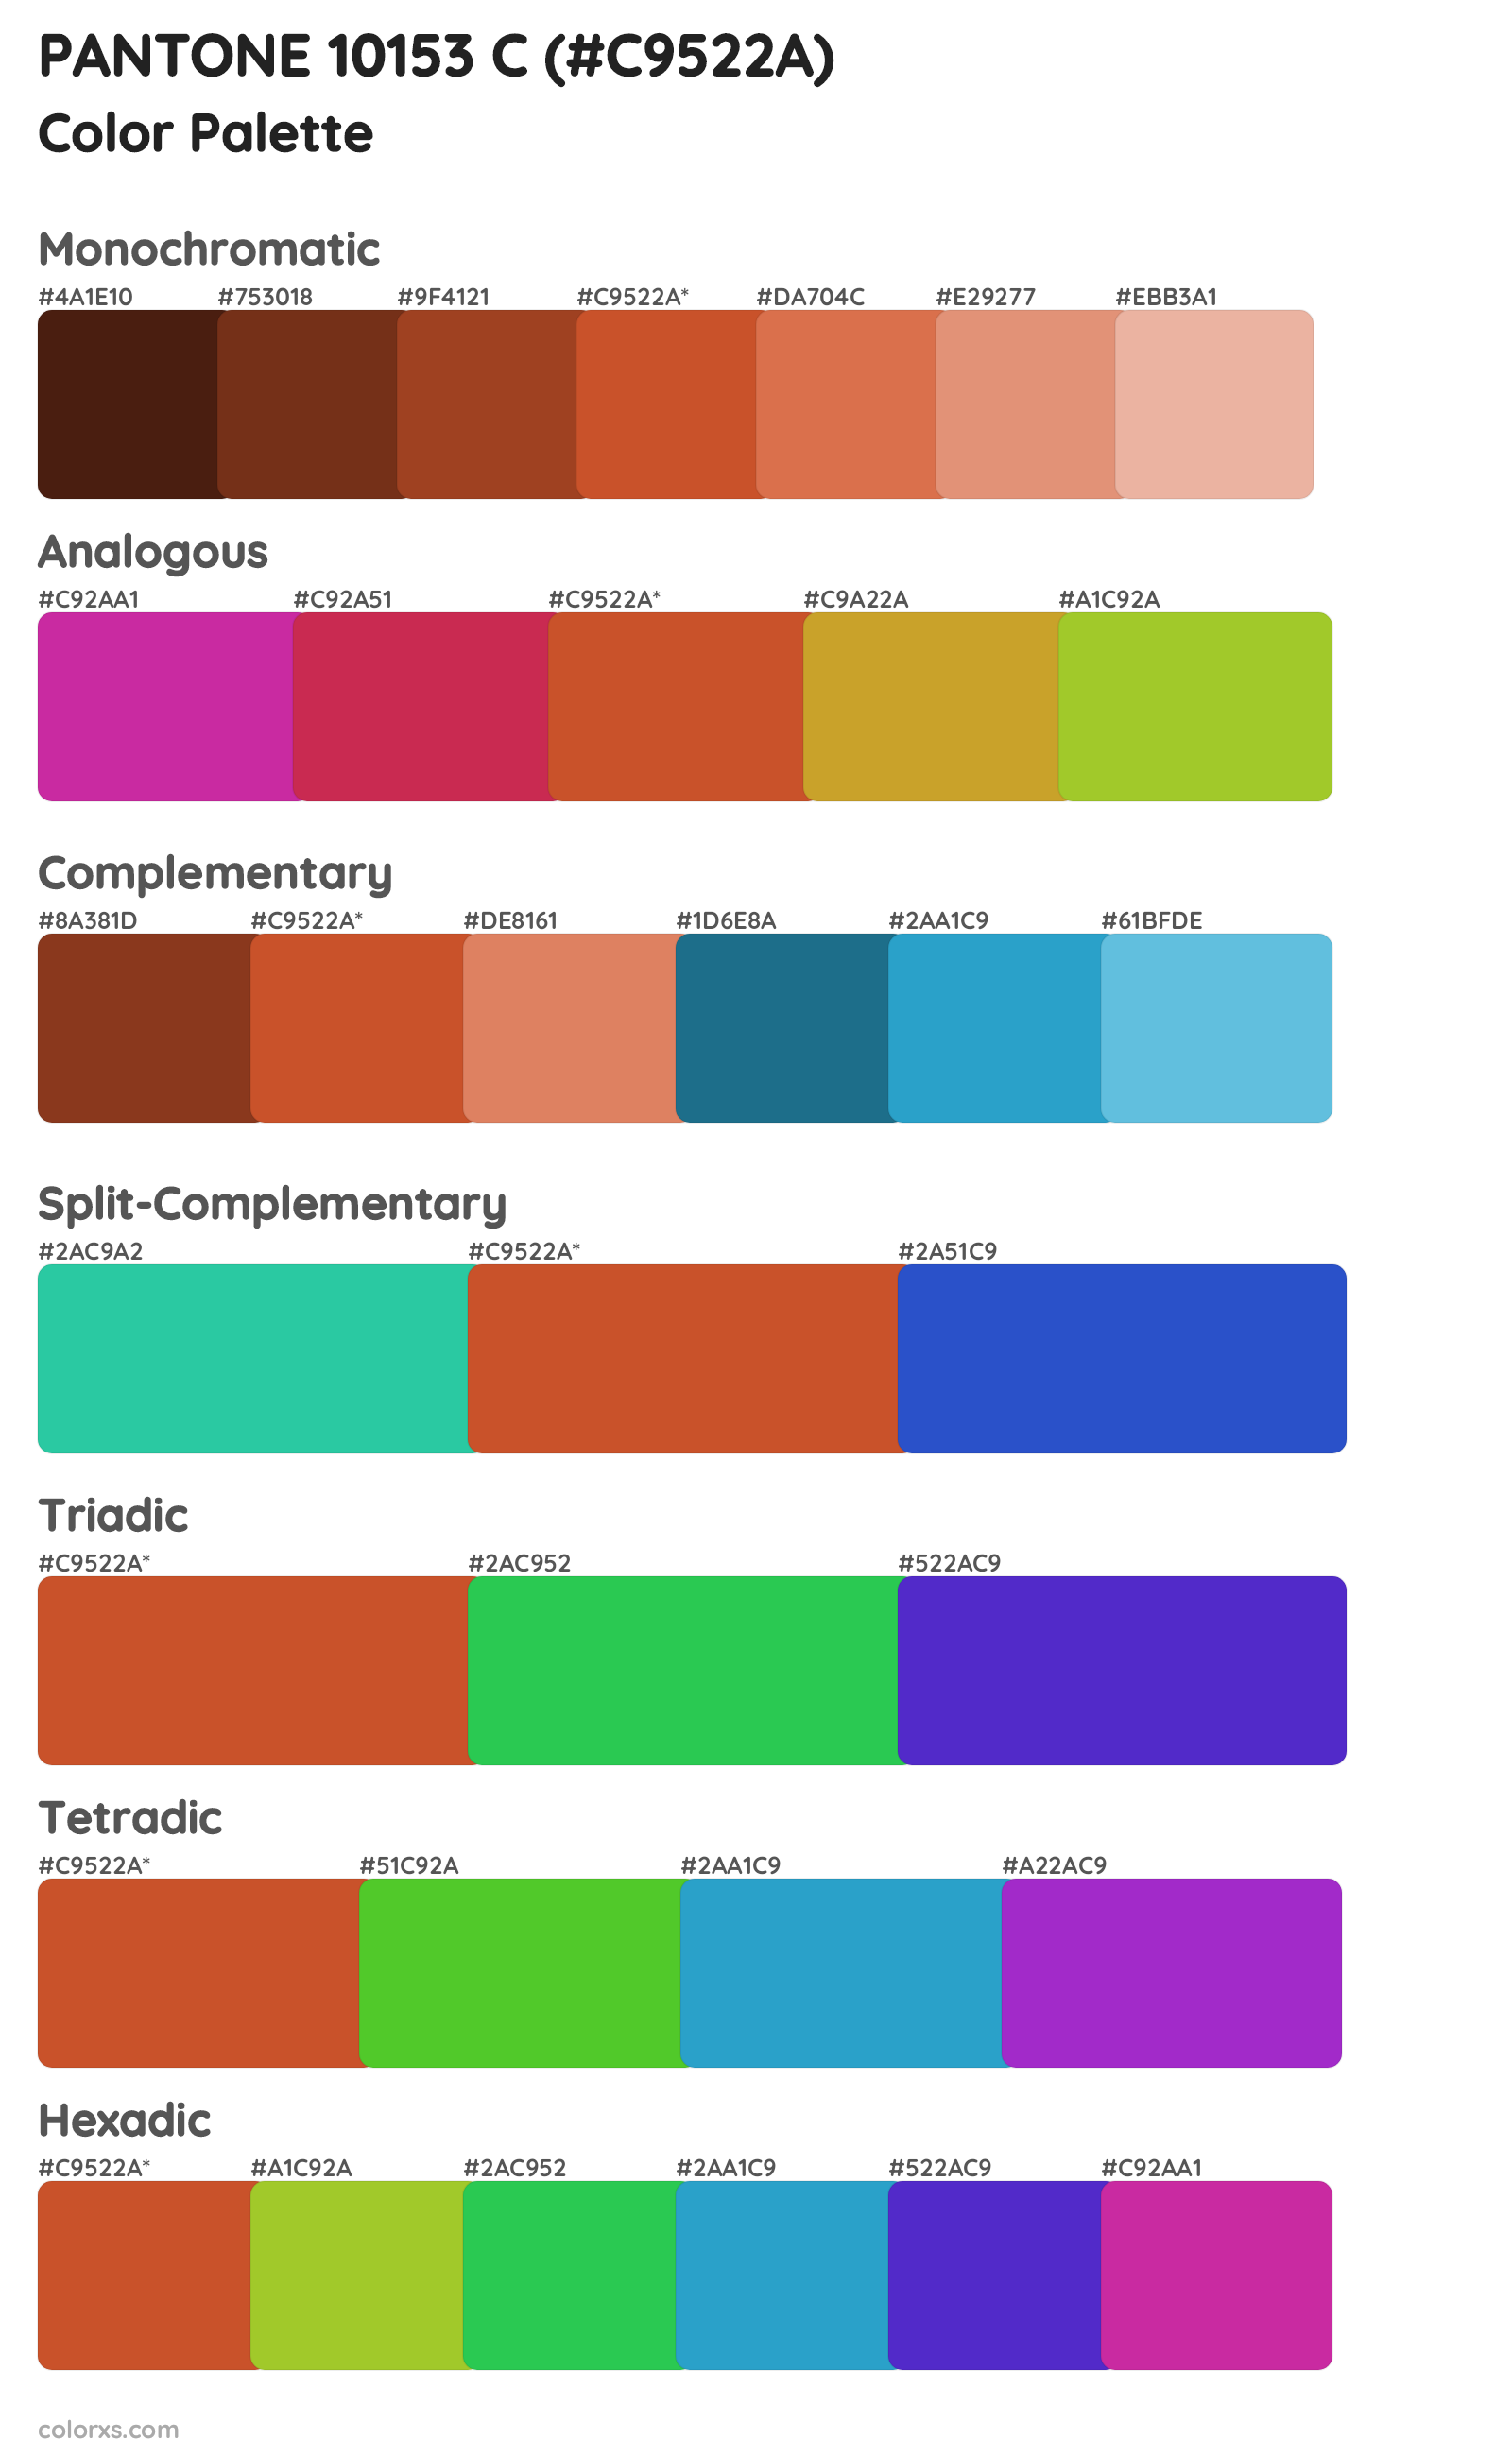 PANTONE 10153 C Color Scheme Palettes